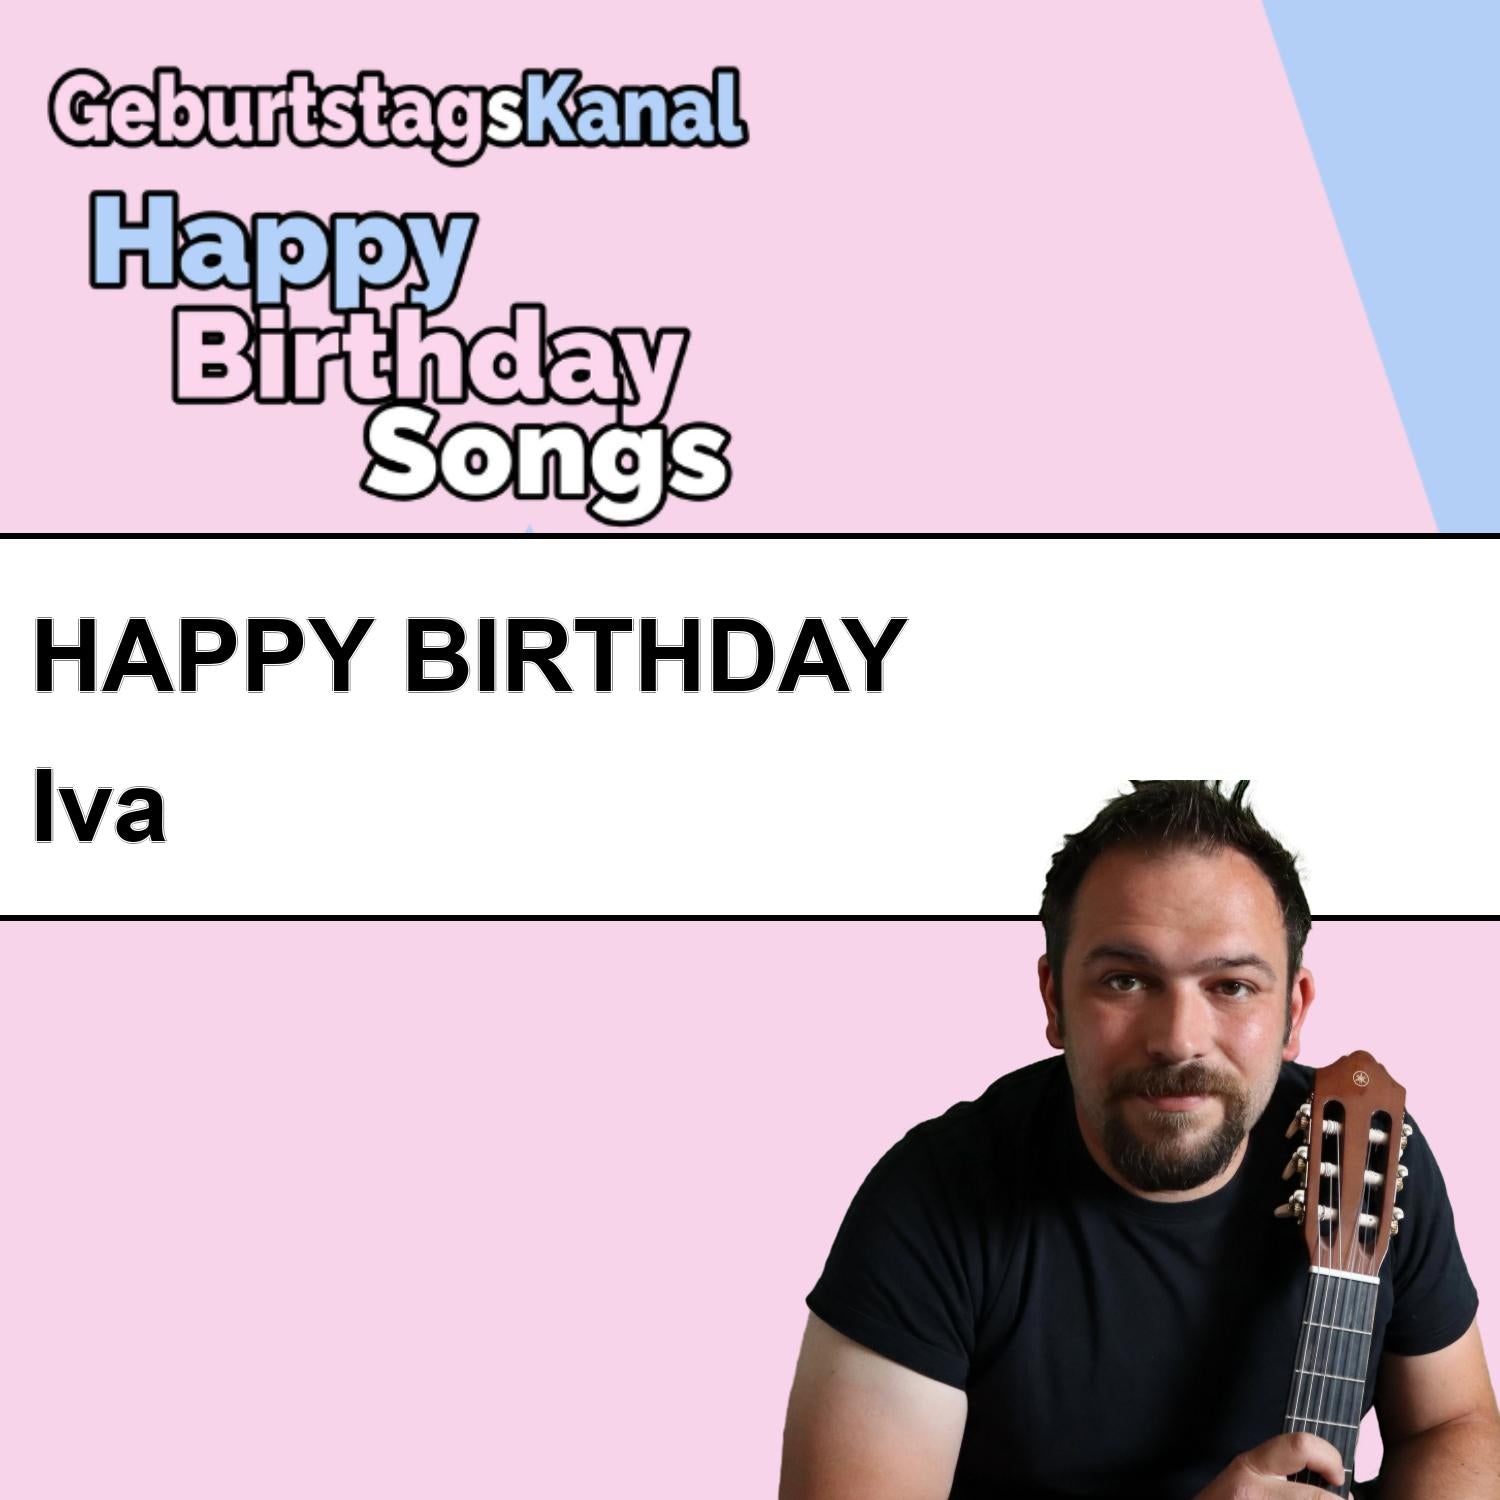 Produktbild Happy Birthday to you Iva mit Wunschgrußbotschaft